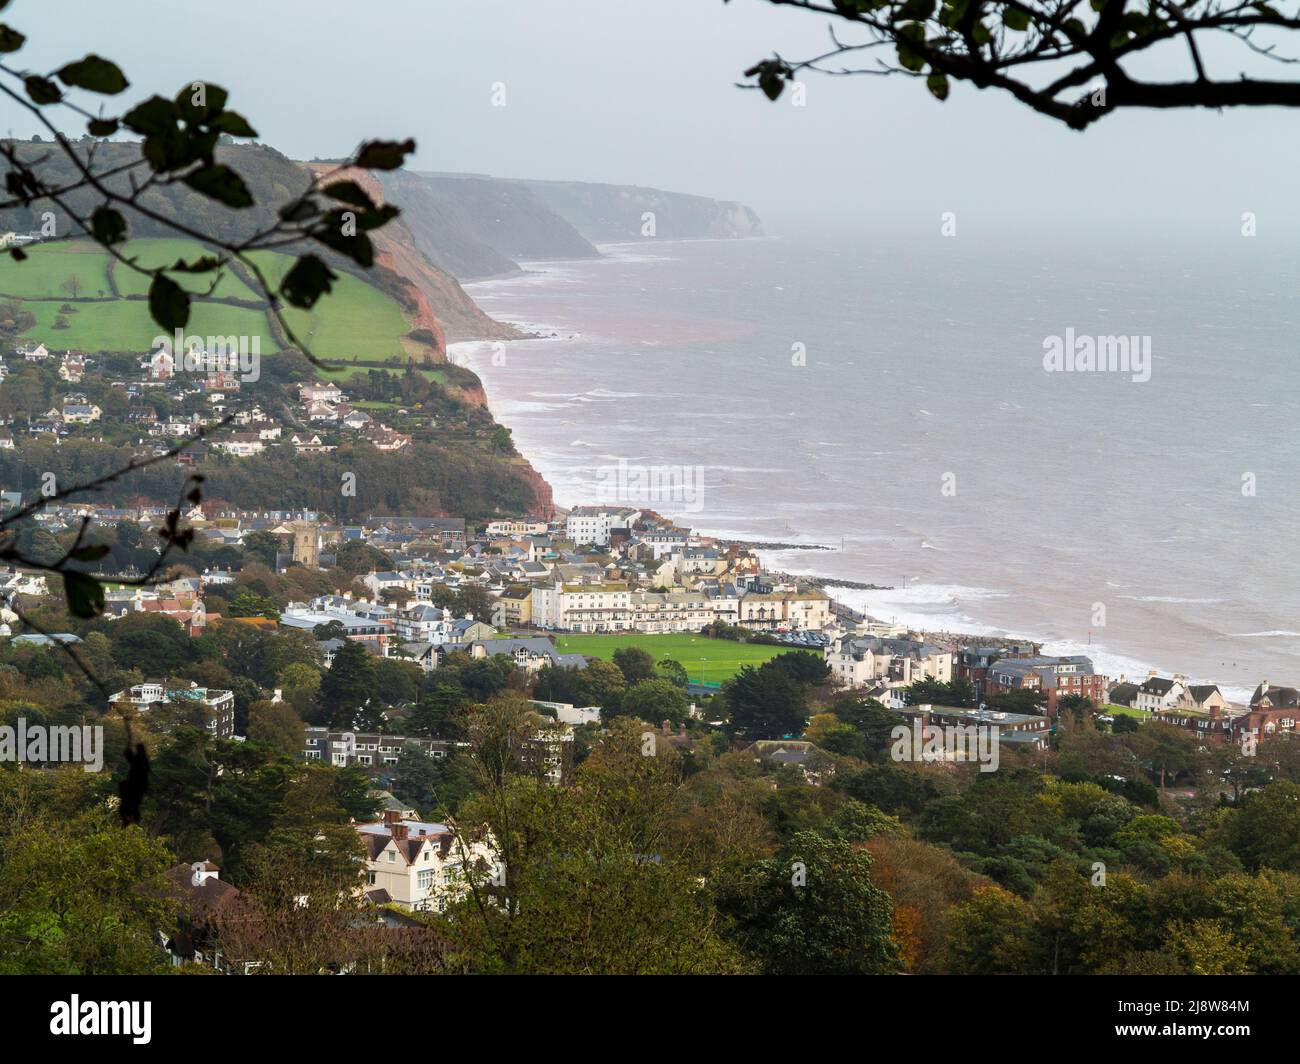 La localidad costera de Sidmouth, Devon, durante una tormenta de otoño Foto de stock